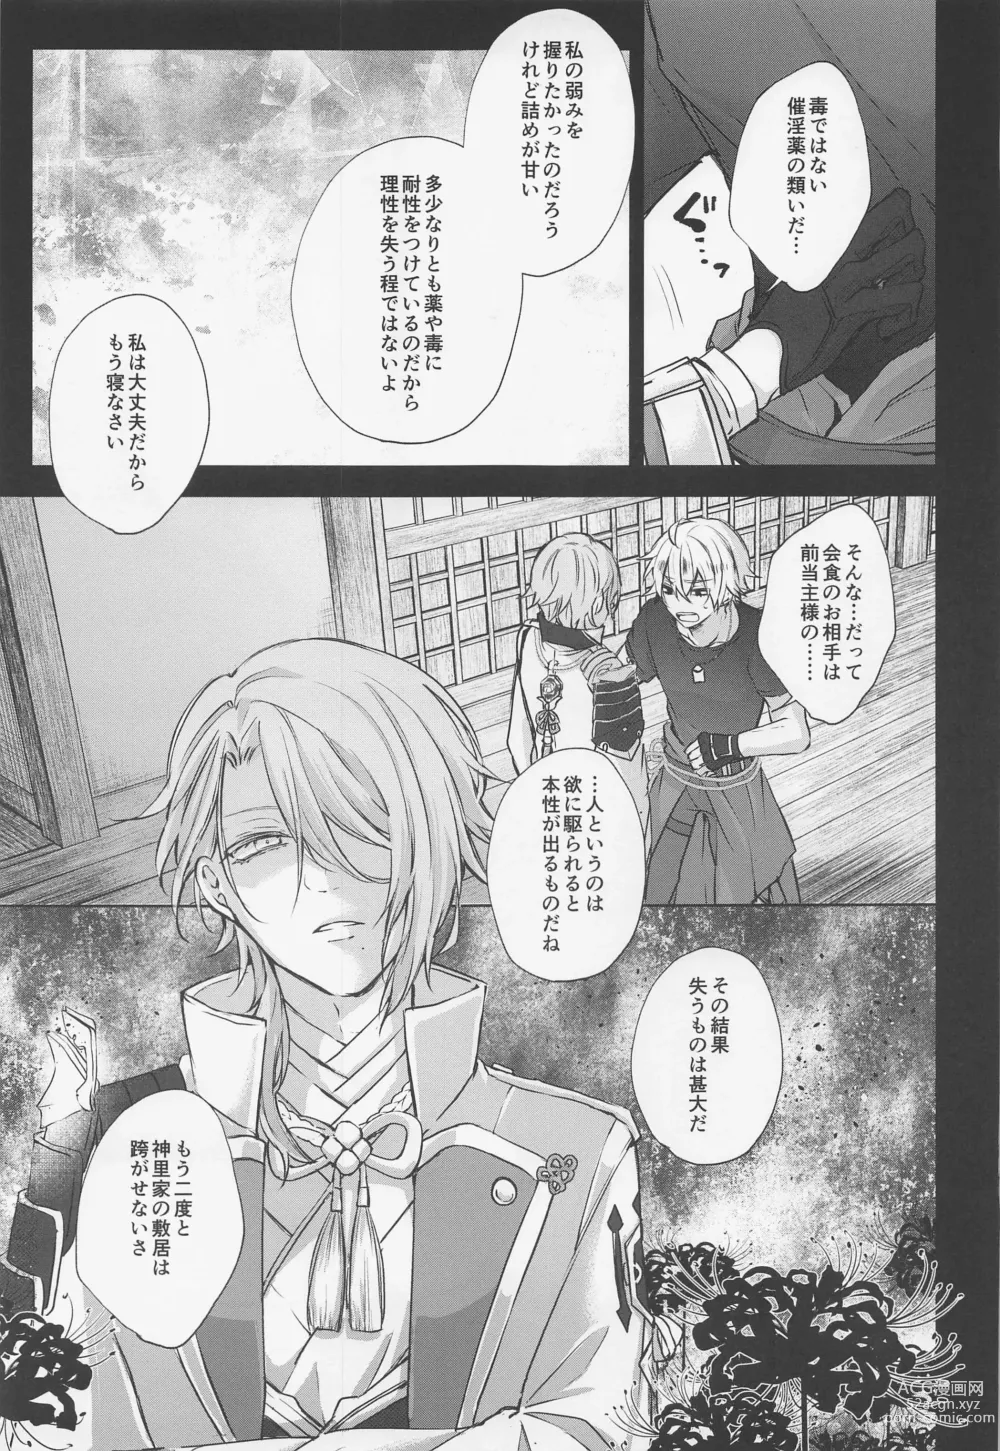 Page 12 of doujinshi Saredo, Kimi ni Sosogu Kingyo no Hanabira